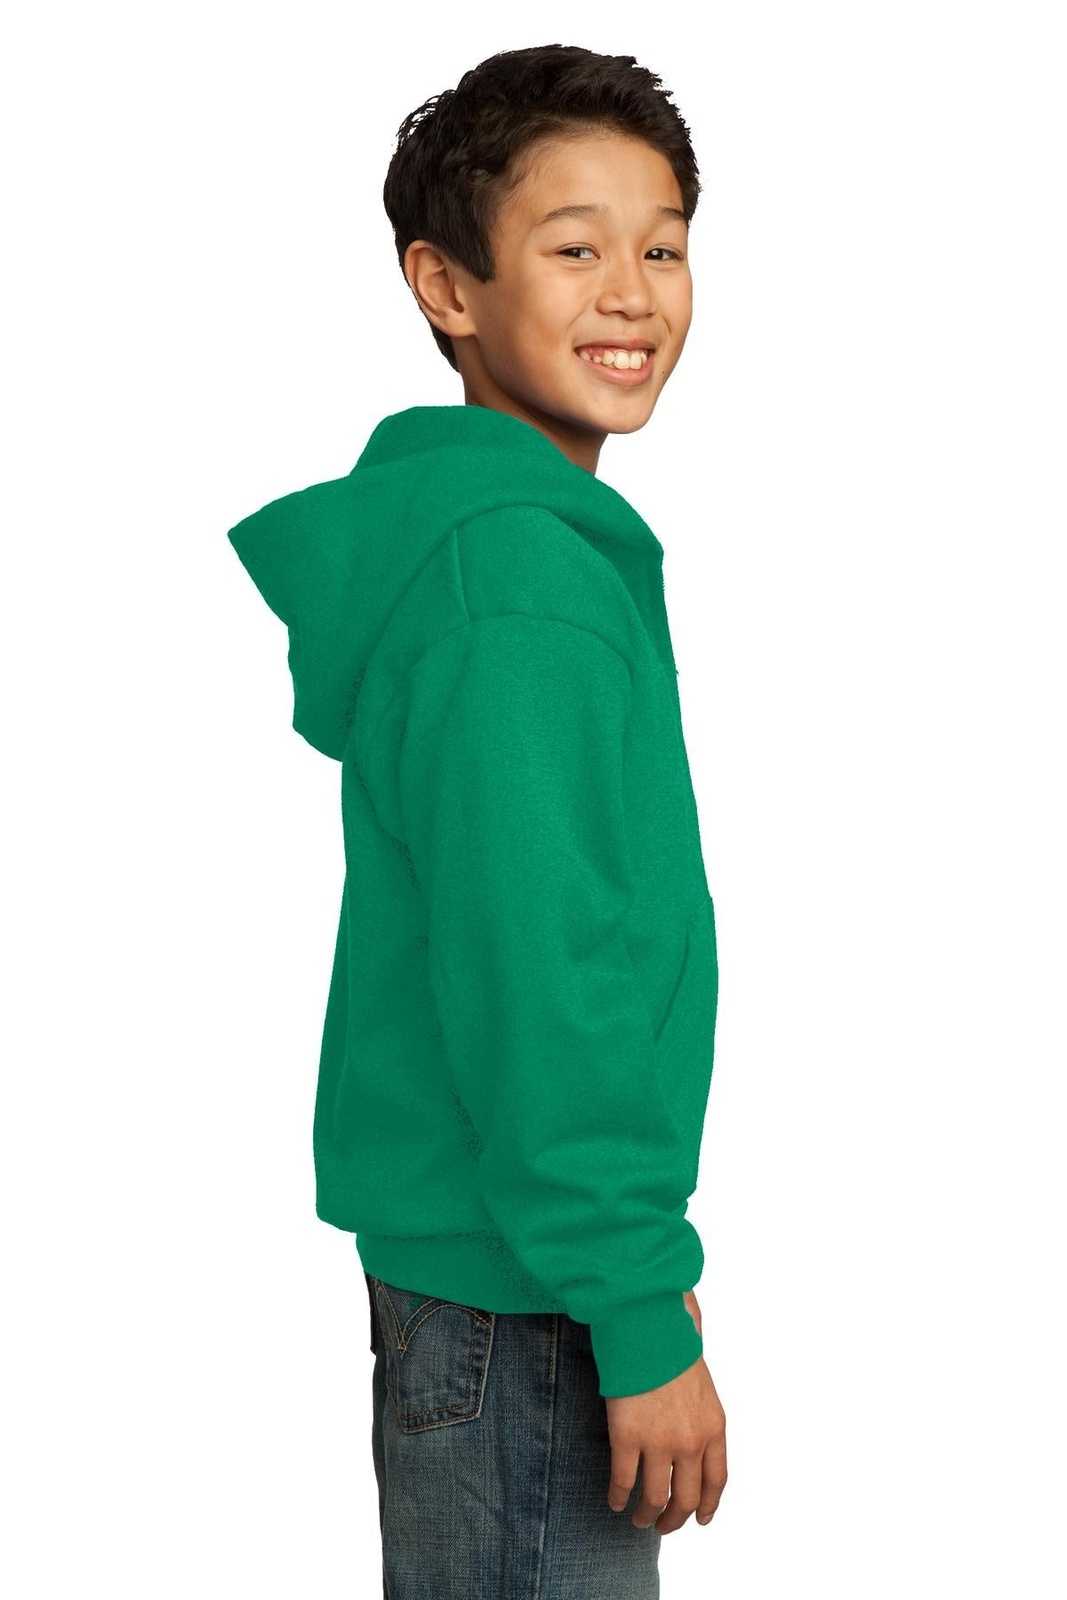 Port & Company PC90YZH Youth Core Fleece Full-Zip Hooded Sweatshirt - Kelly - HIT a Double - 1